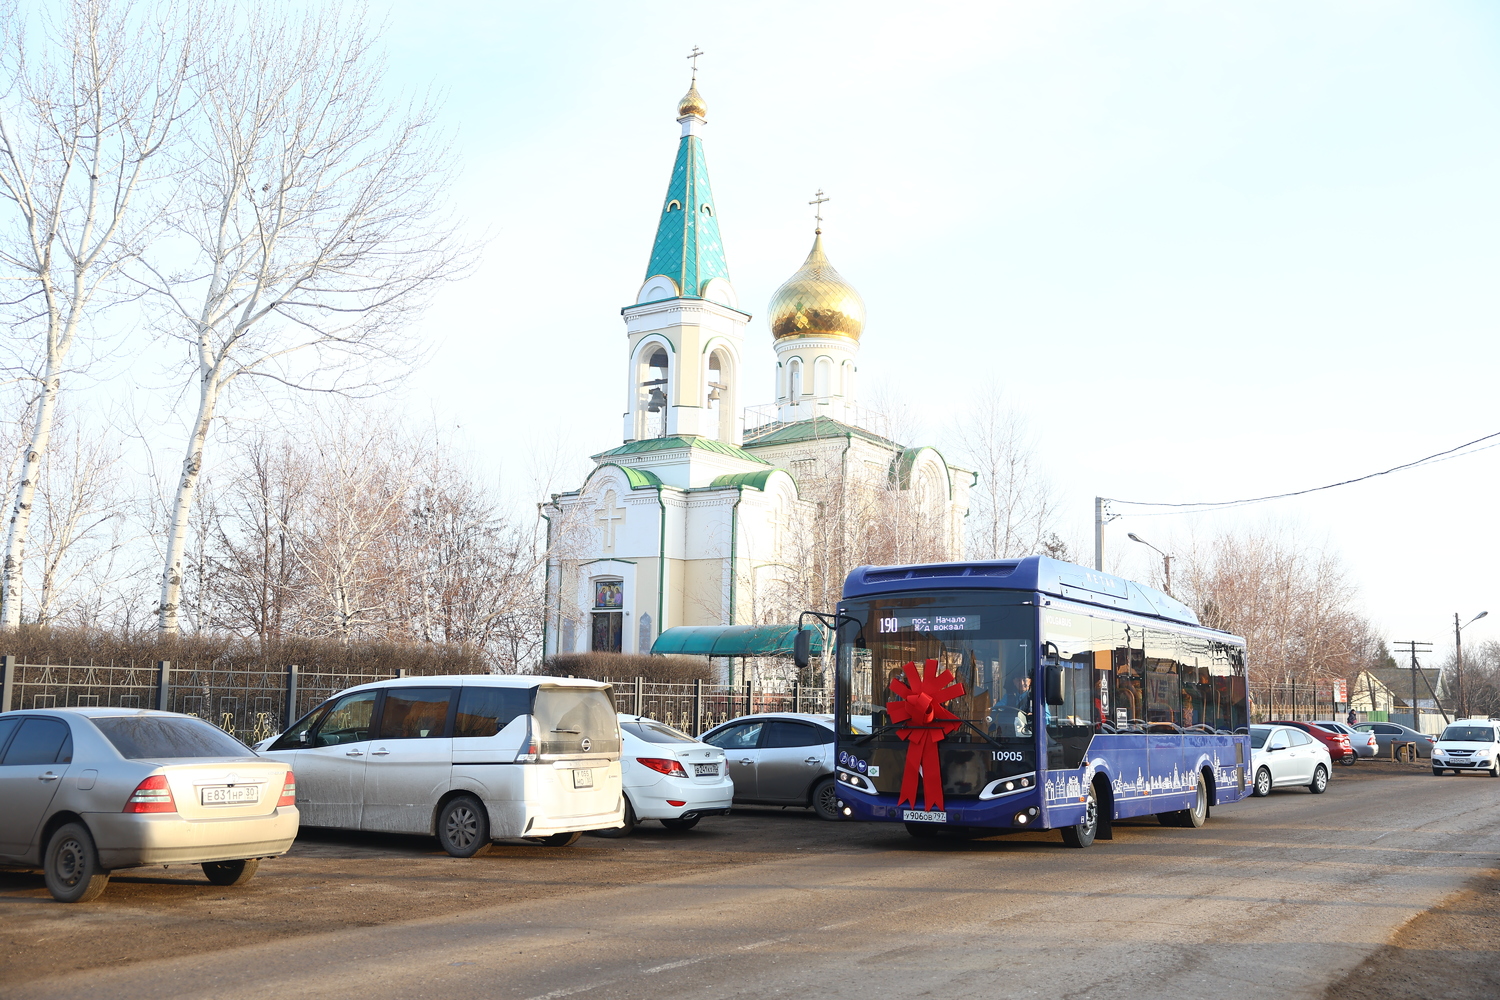 Как в Астрахани в первый рейс отправился автобус №190: кадры счастливых пассажиров, Деда Мороза и Снегурочки 